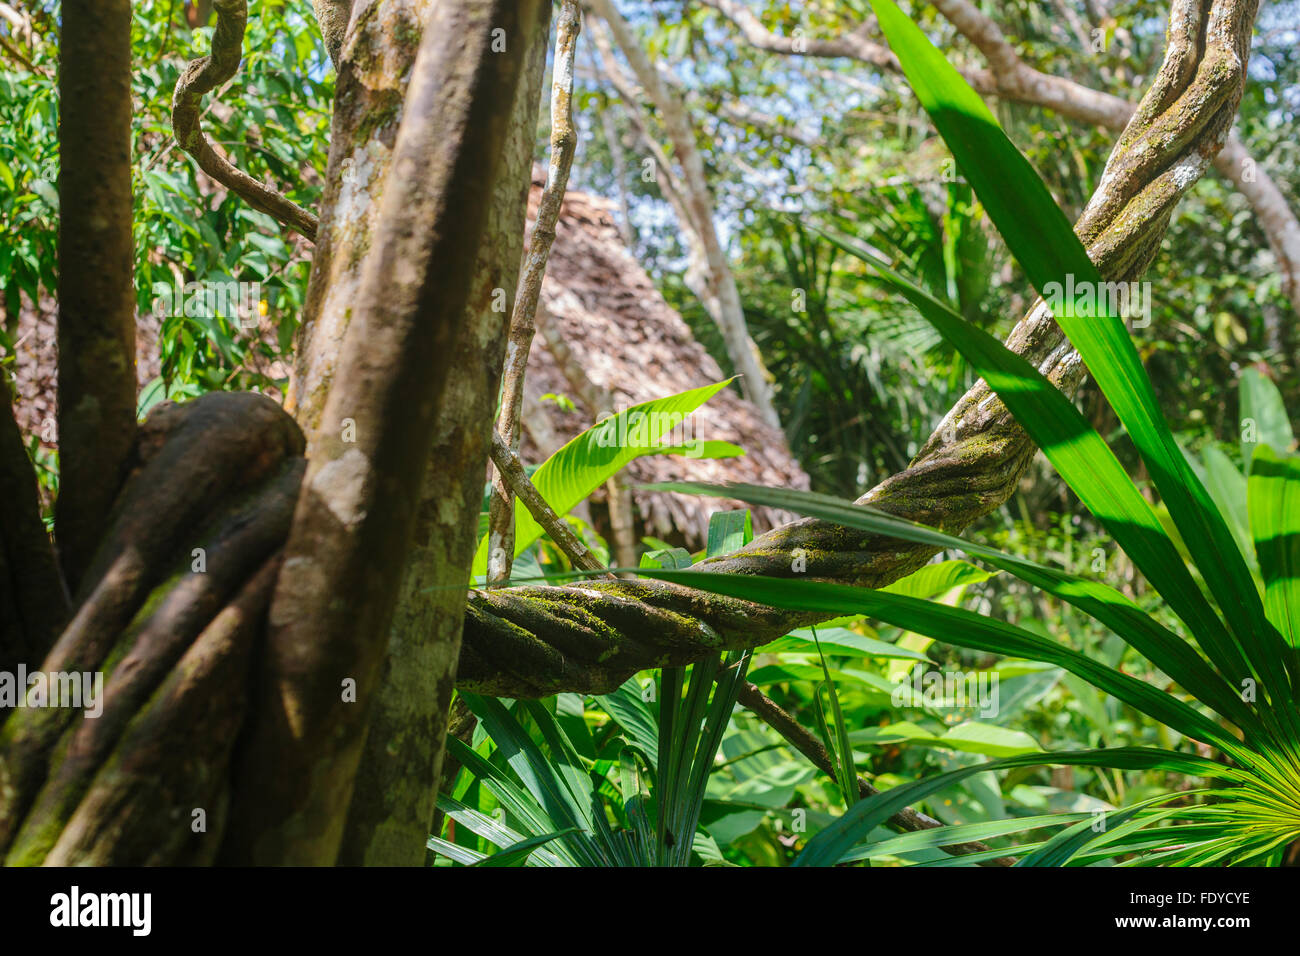 L'ayahuasca vine, Banisteriopsis caapi, è una giungla tradizionale medicina che cresce in amazzonia del Perù e spirali come dna Foto Stock